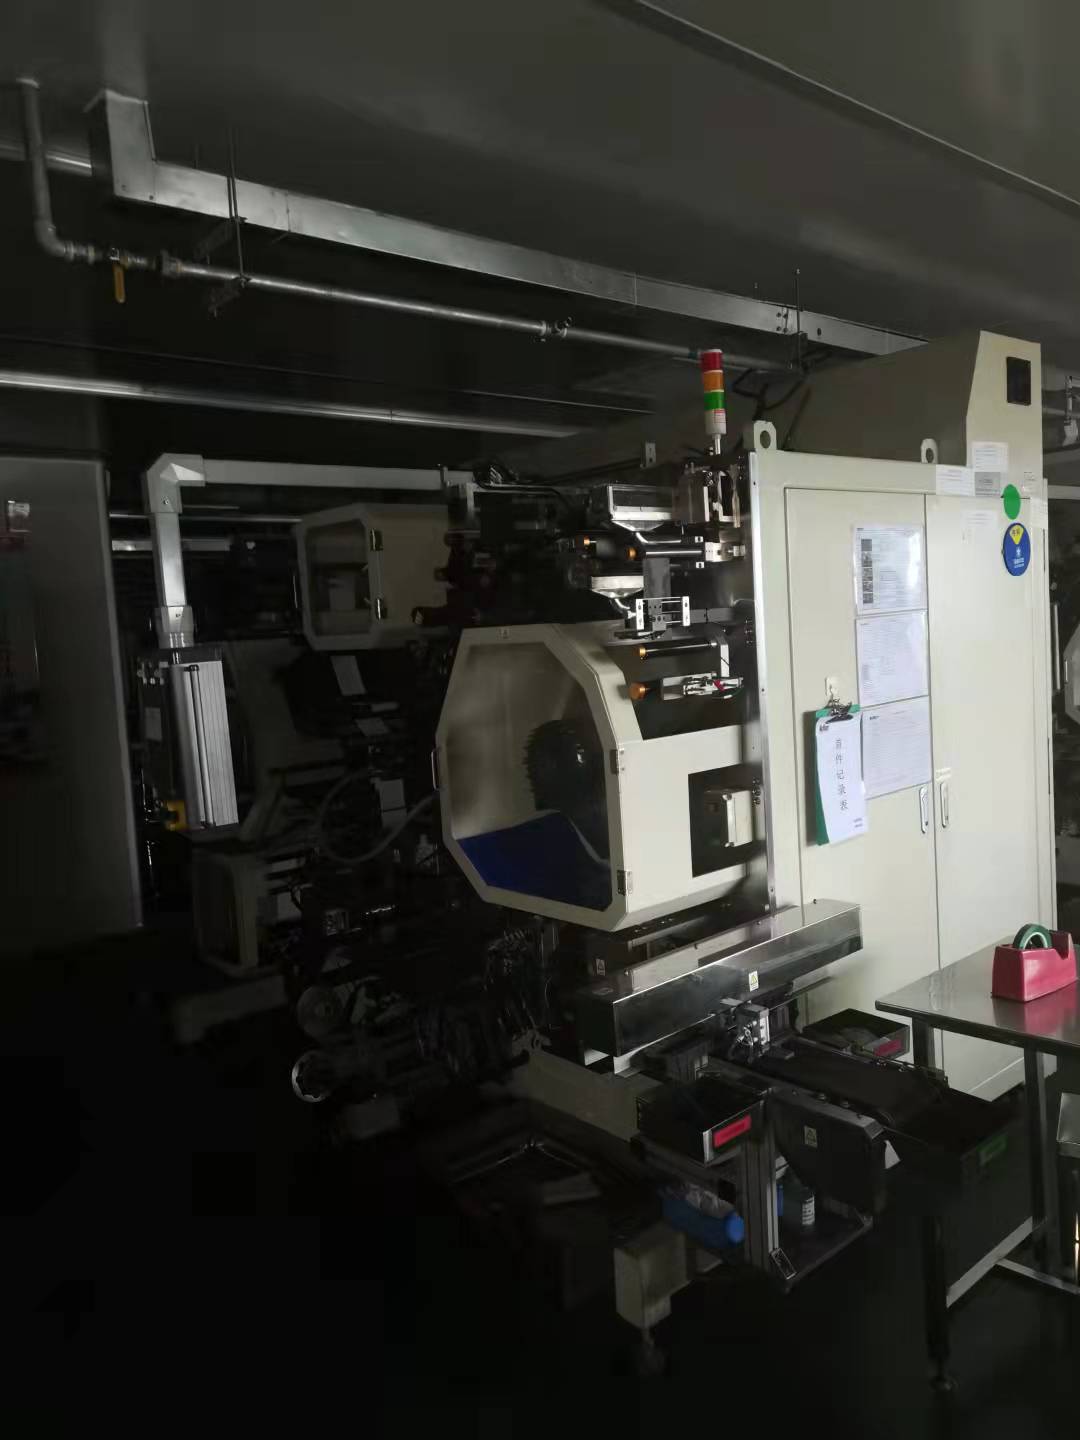 四川模切机CCD检测系统锂电池设备手套箱报价